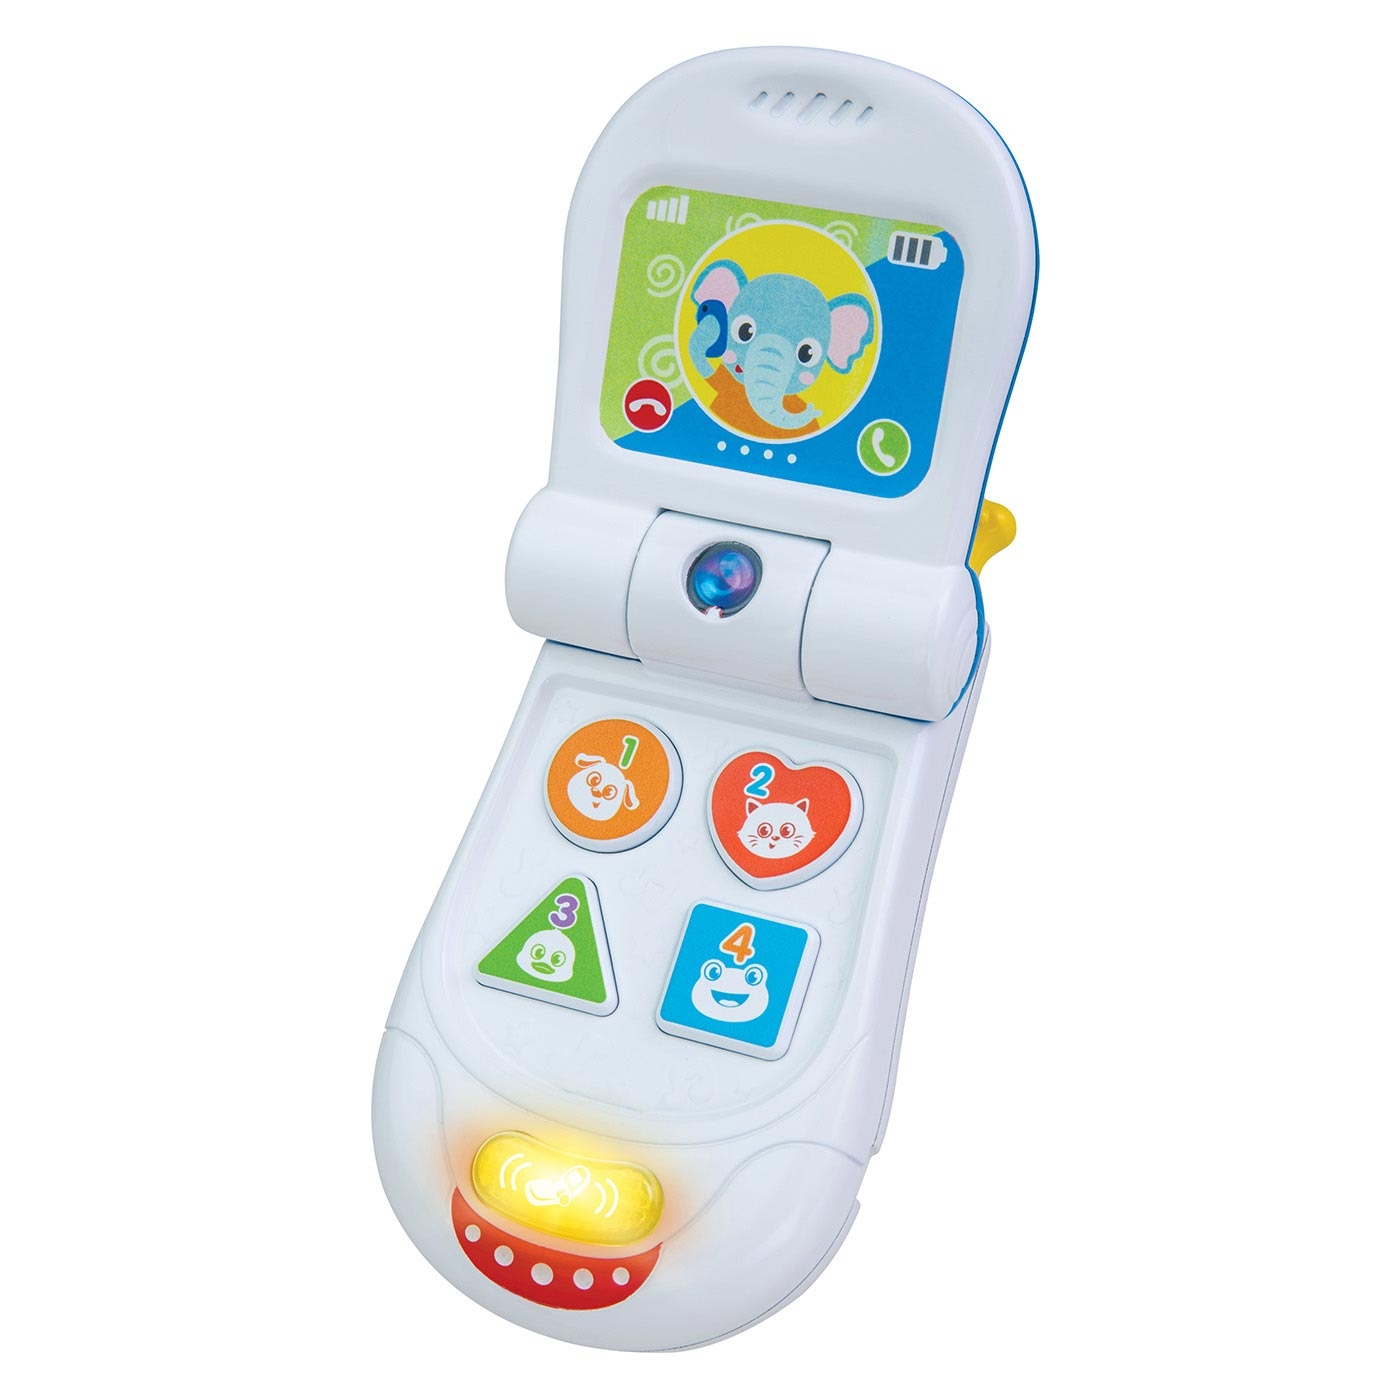 Teléfono celular para Bebé WINFUN